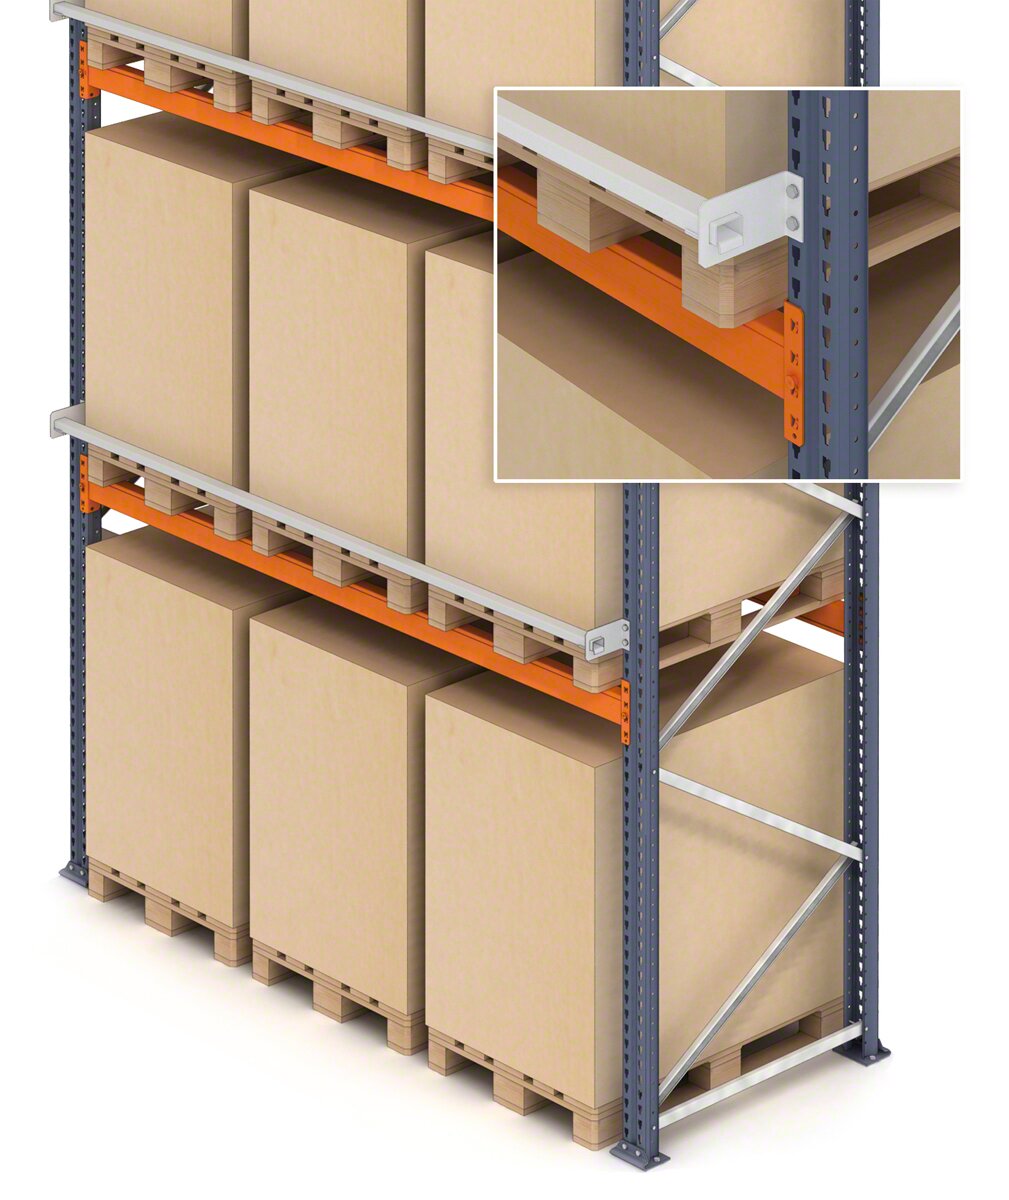 Es posible añadir un perfil de seguridad para la mercancía depositada en las estanterías de pallets